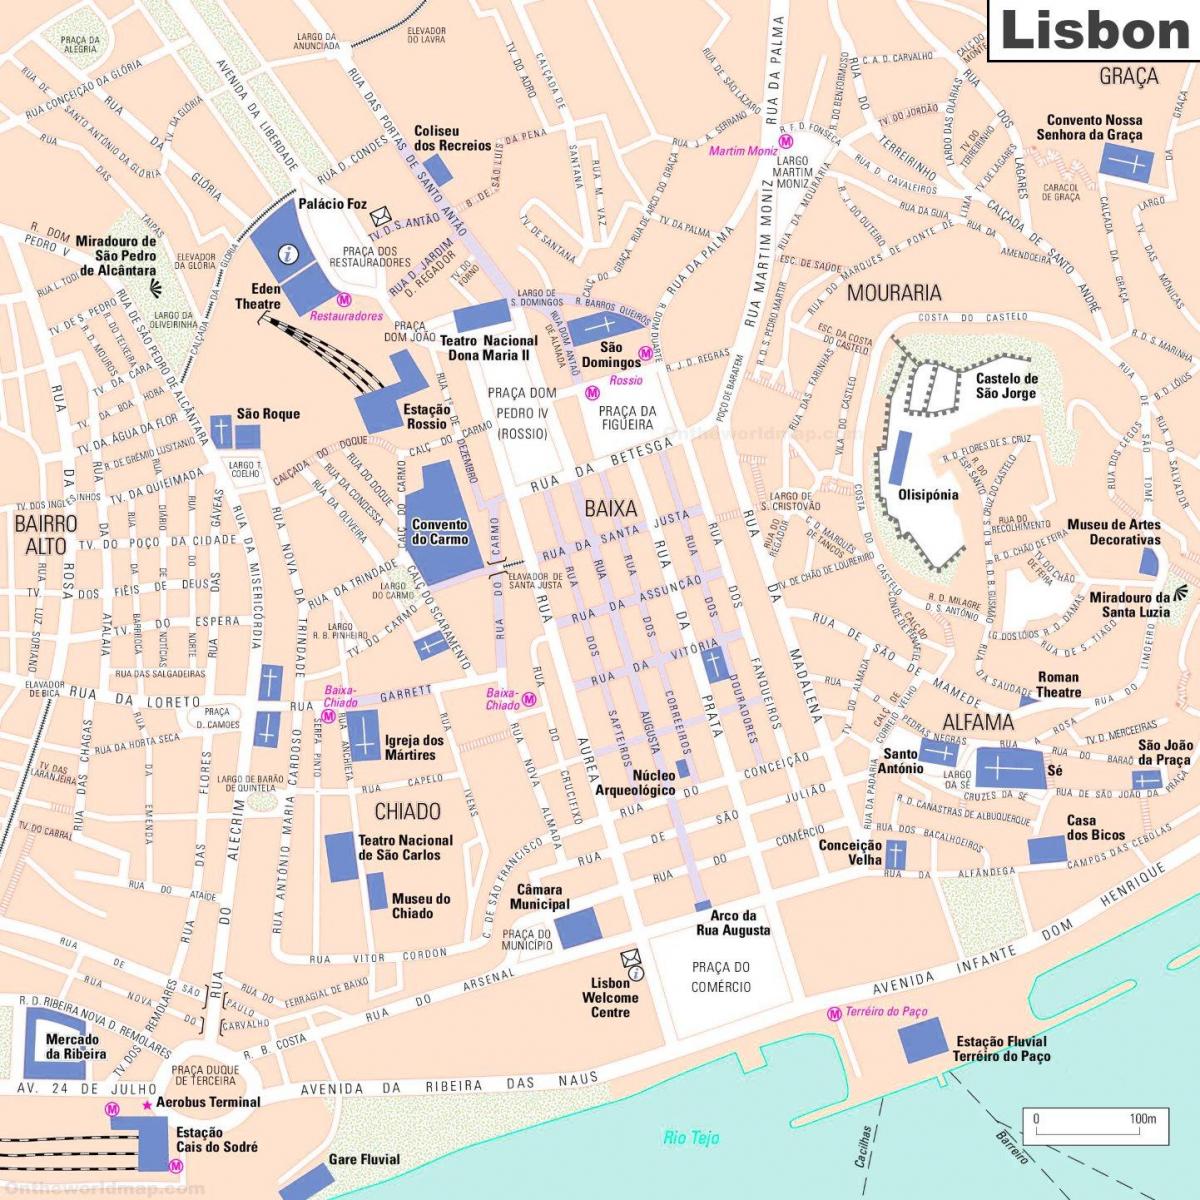 Mappa del centro di Lisbona